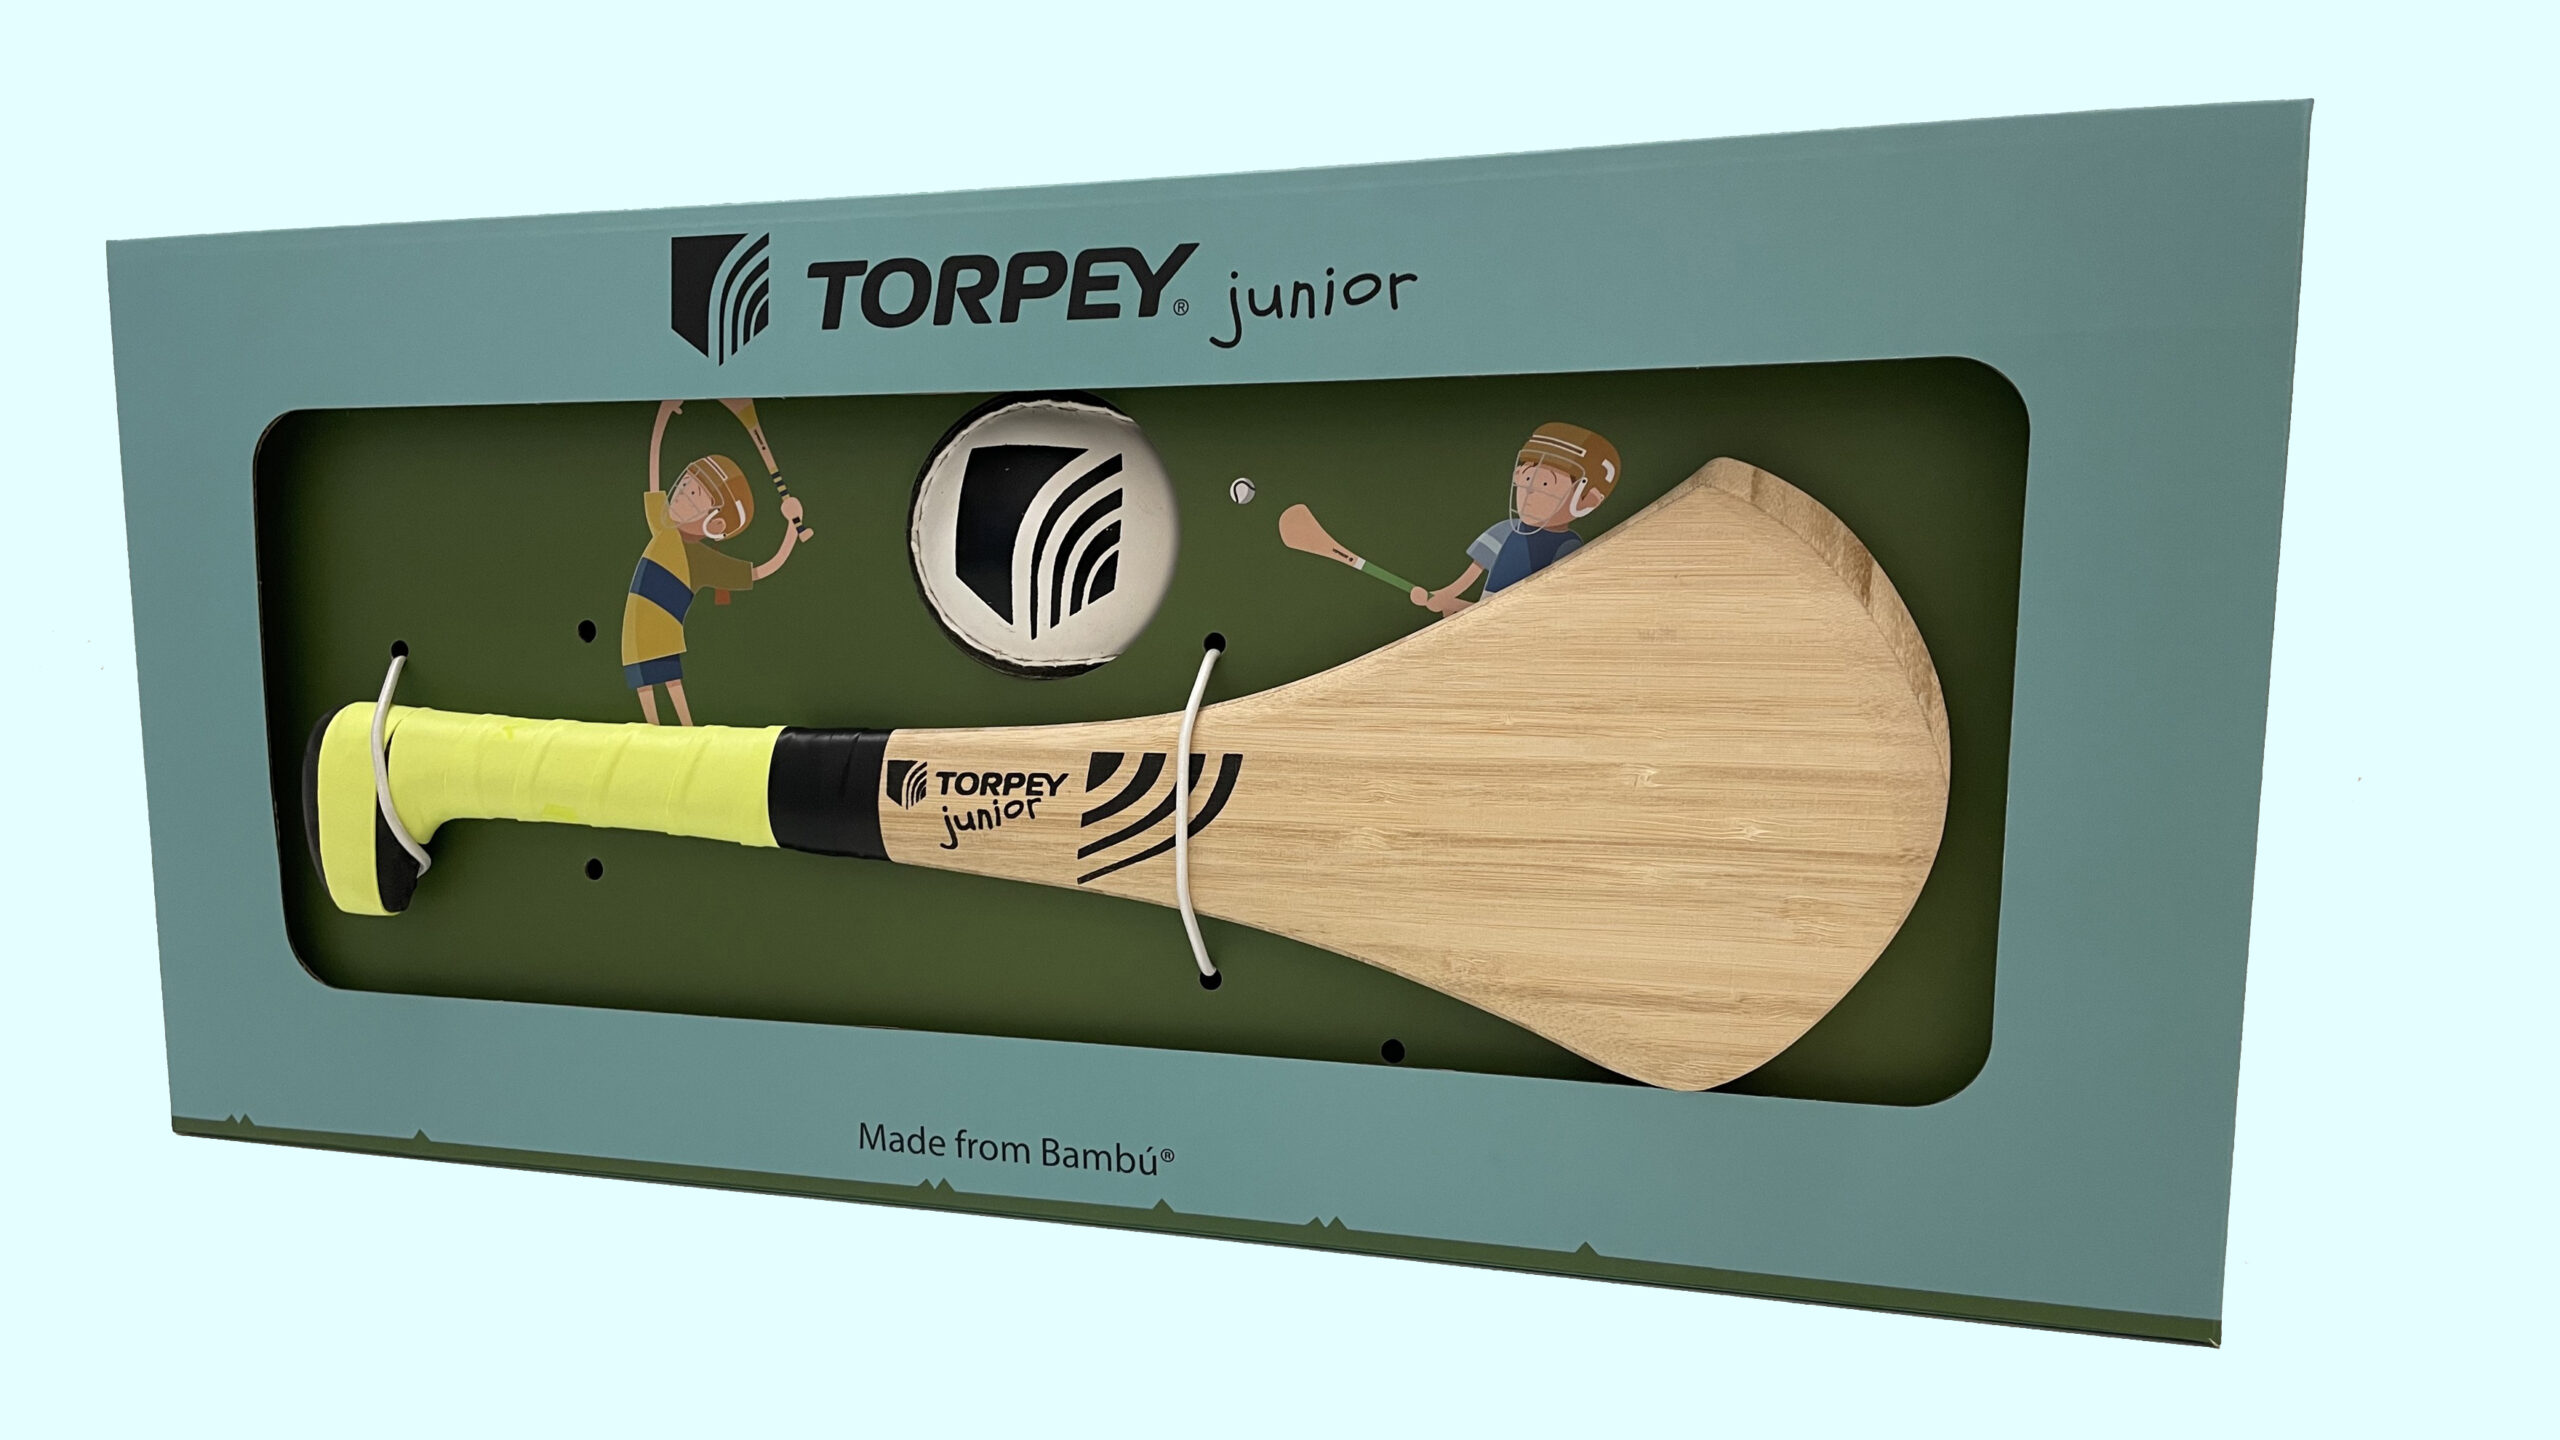 Torpey Junior